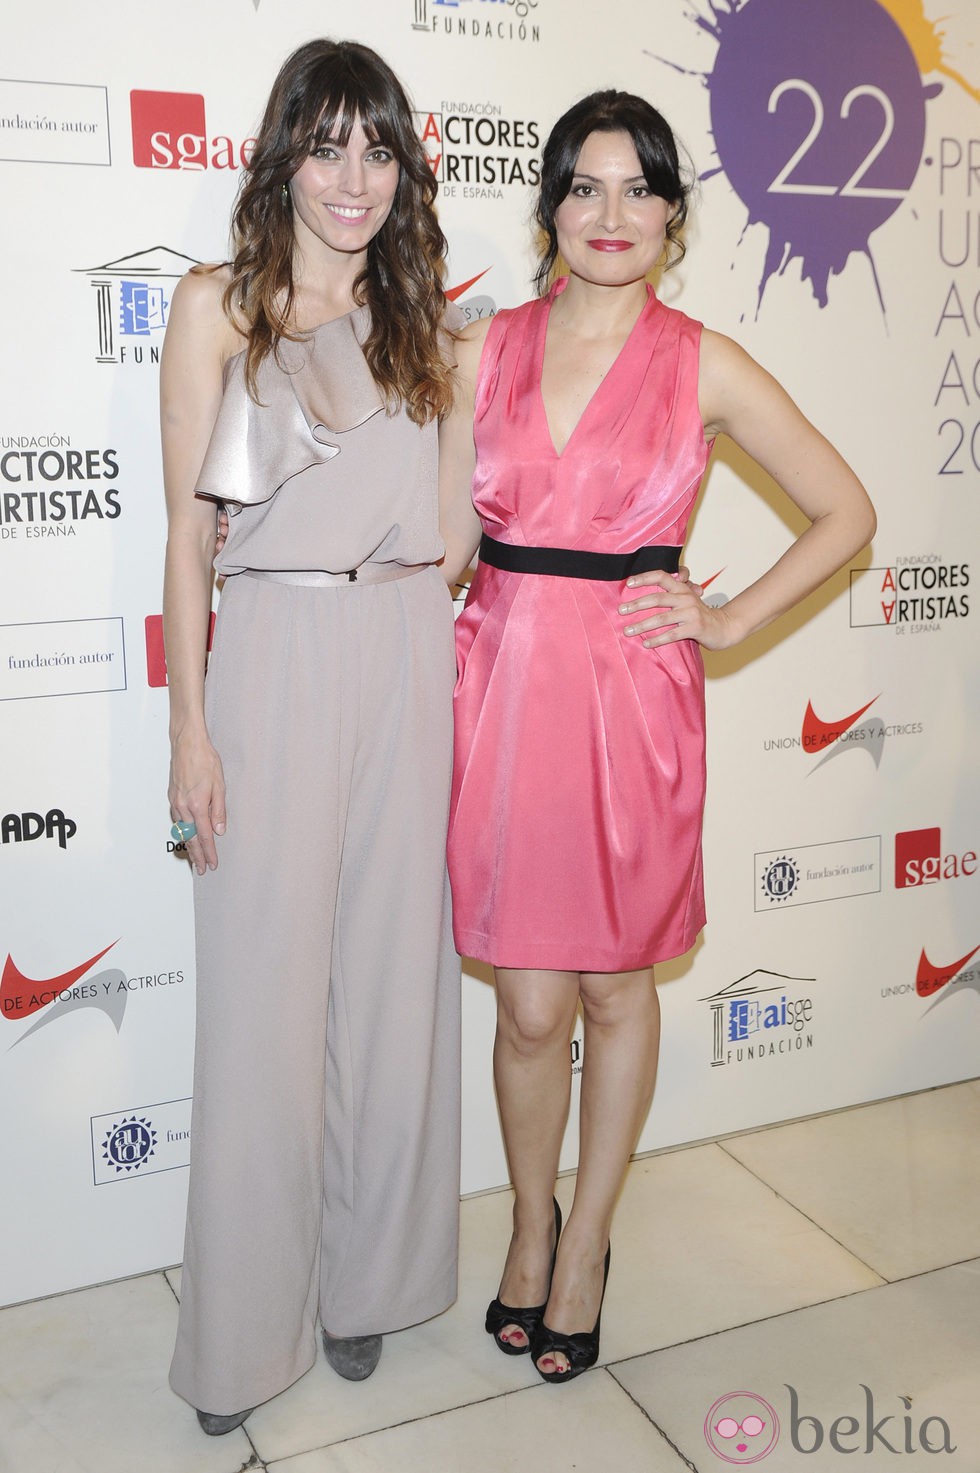 Ledicia Sola compañada en la alfombra roja de los Premios Unión de Actores 2012